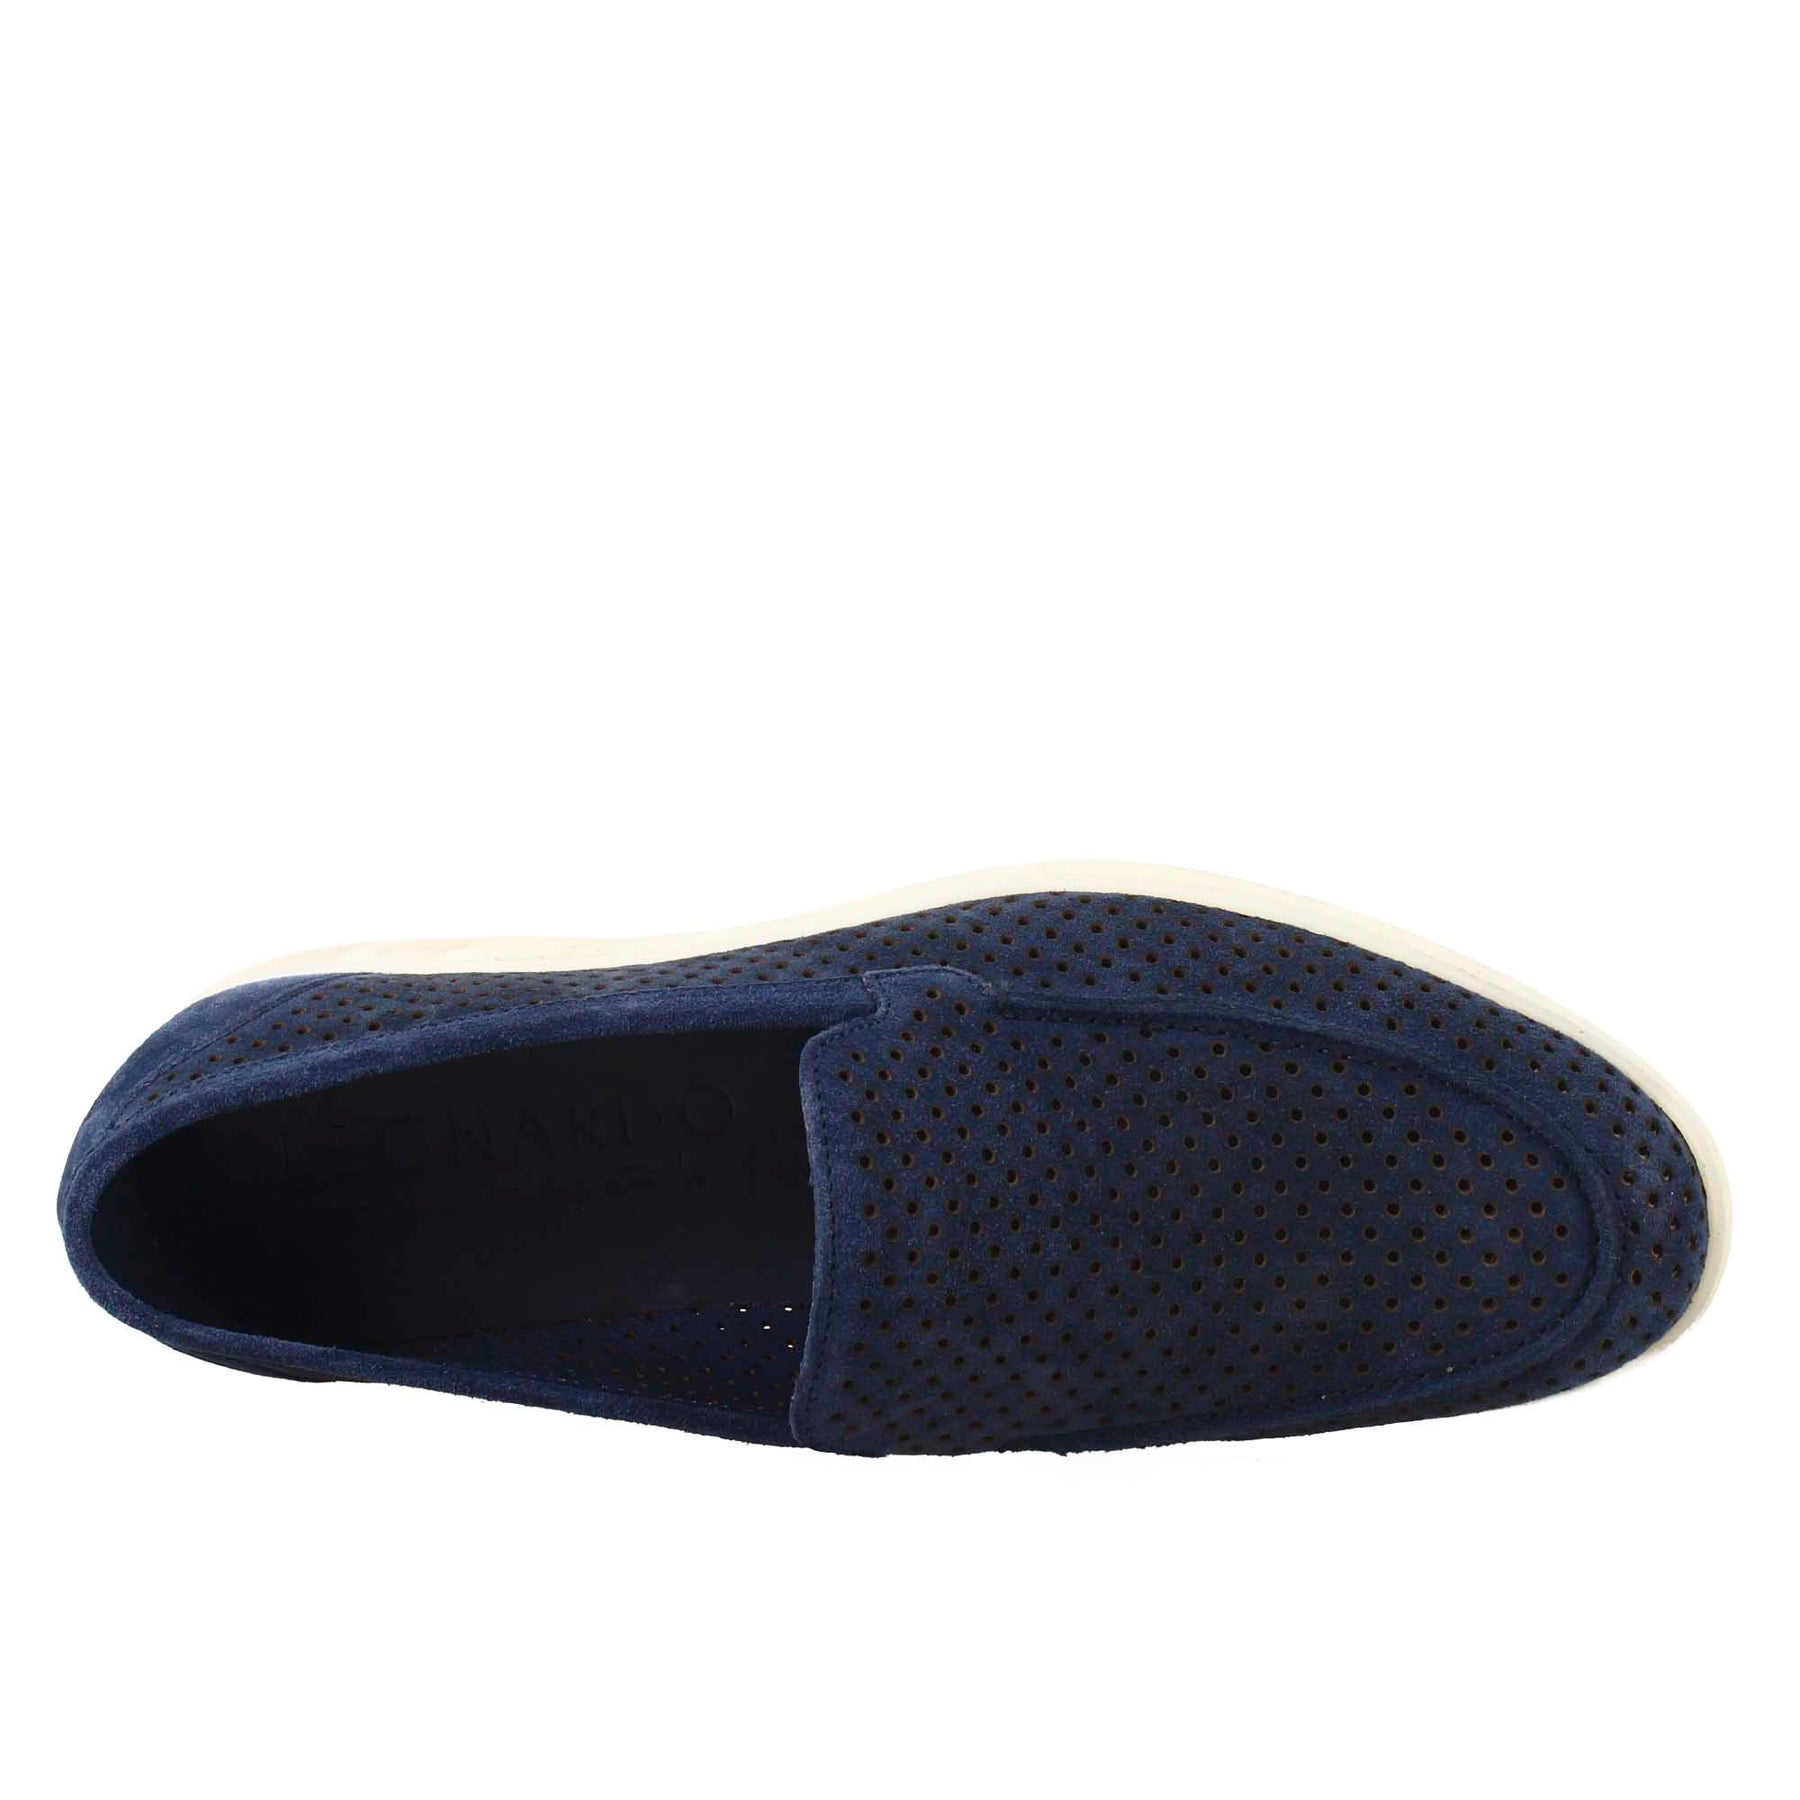 Elegant dark blue unlined loafer for men in suede